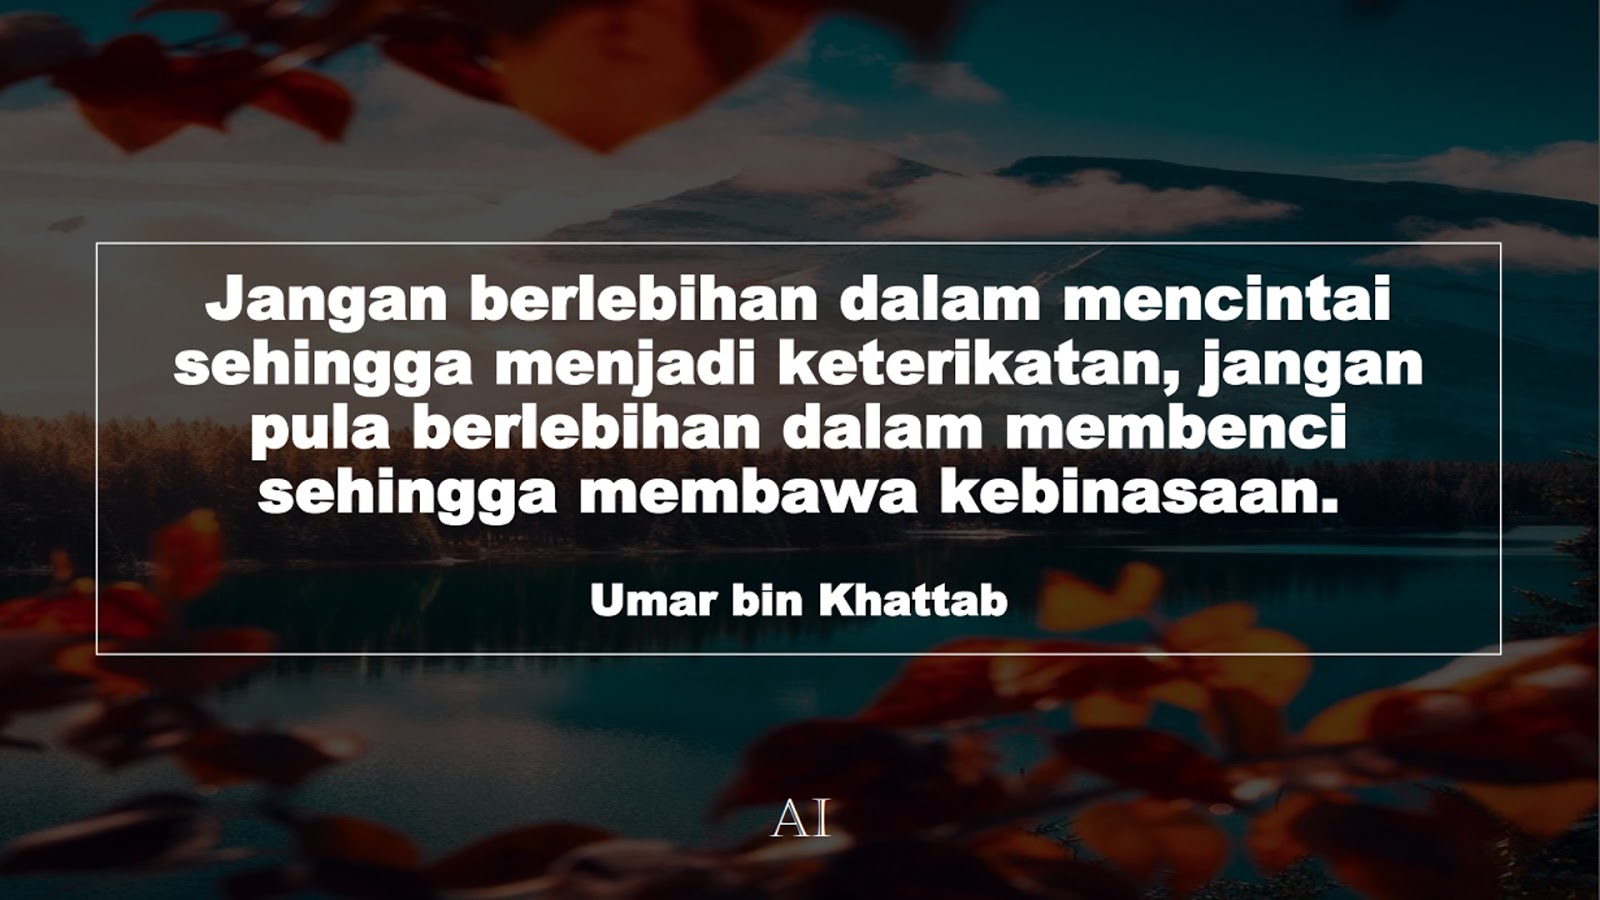 Wallpaper Kata Bijak Umar bin Khattab  (Jangan berlebihan dalam mencintai sehingga menjadi keterikatan, jangan pula berlebihan dalam membenci sehingga membawa kebinasaan.)